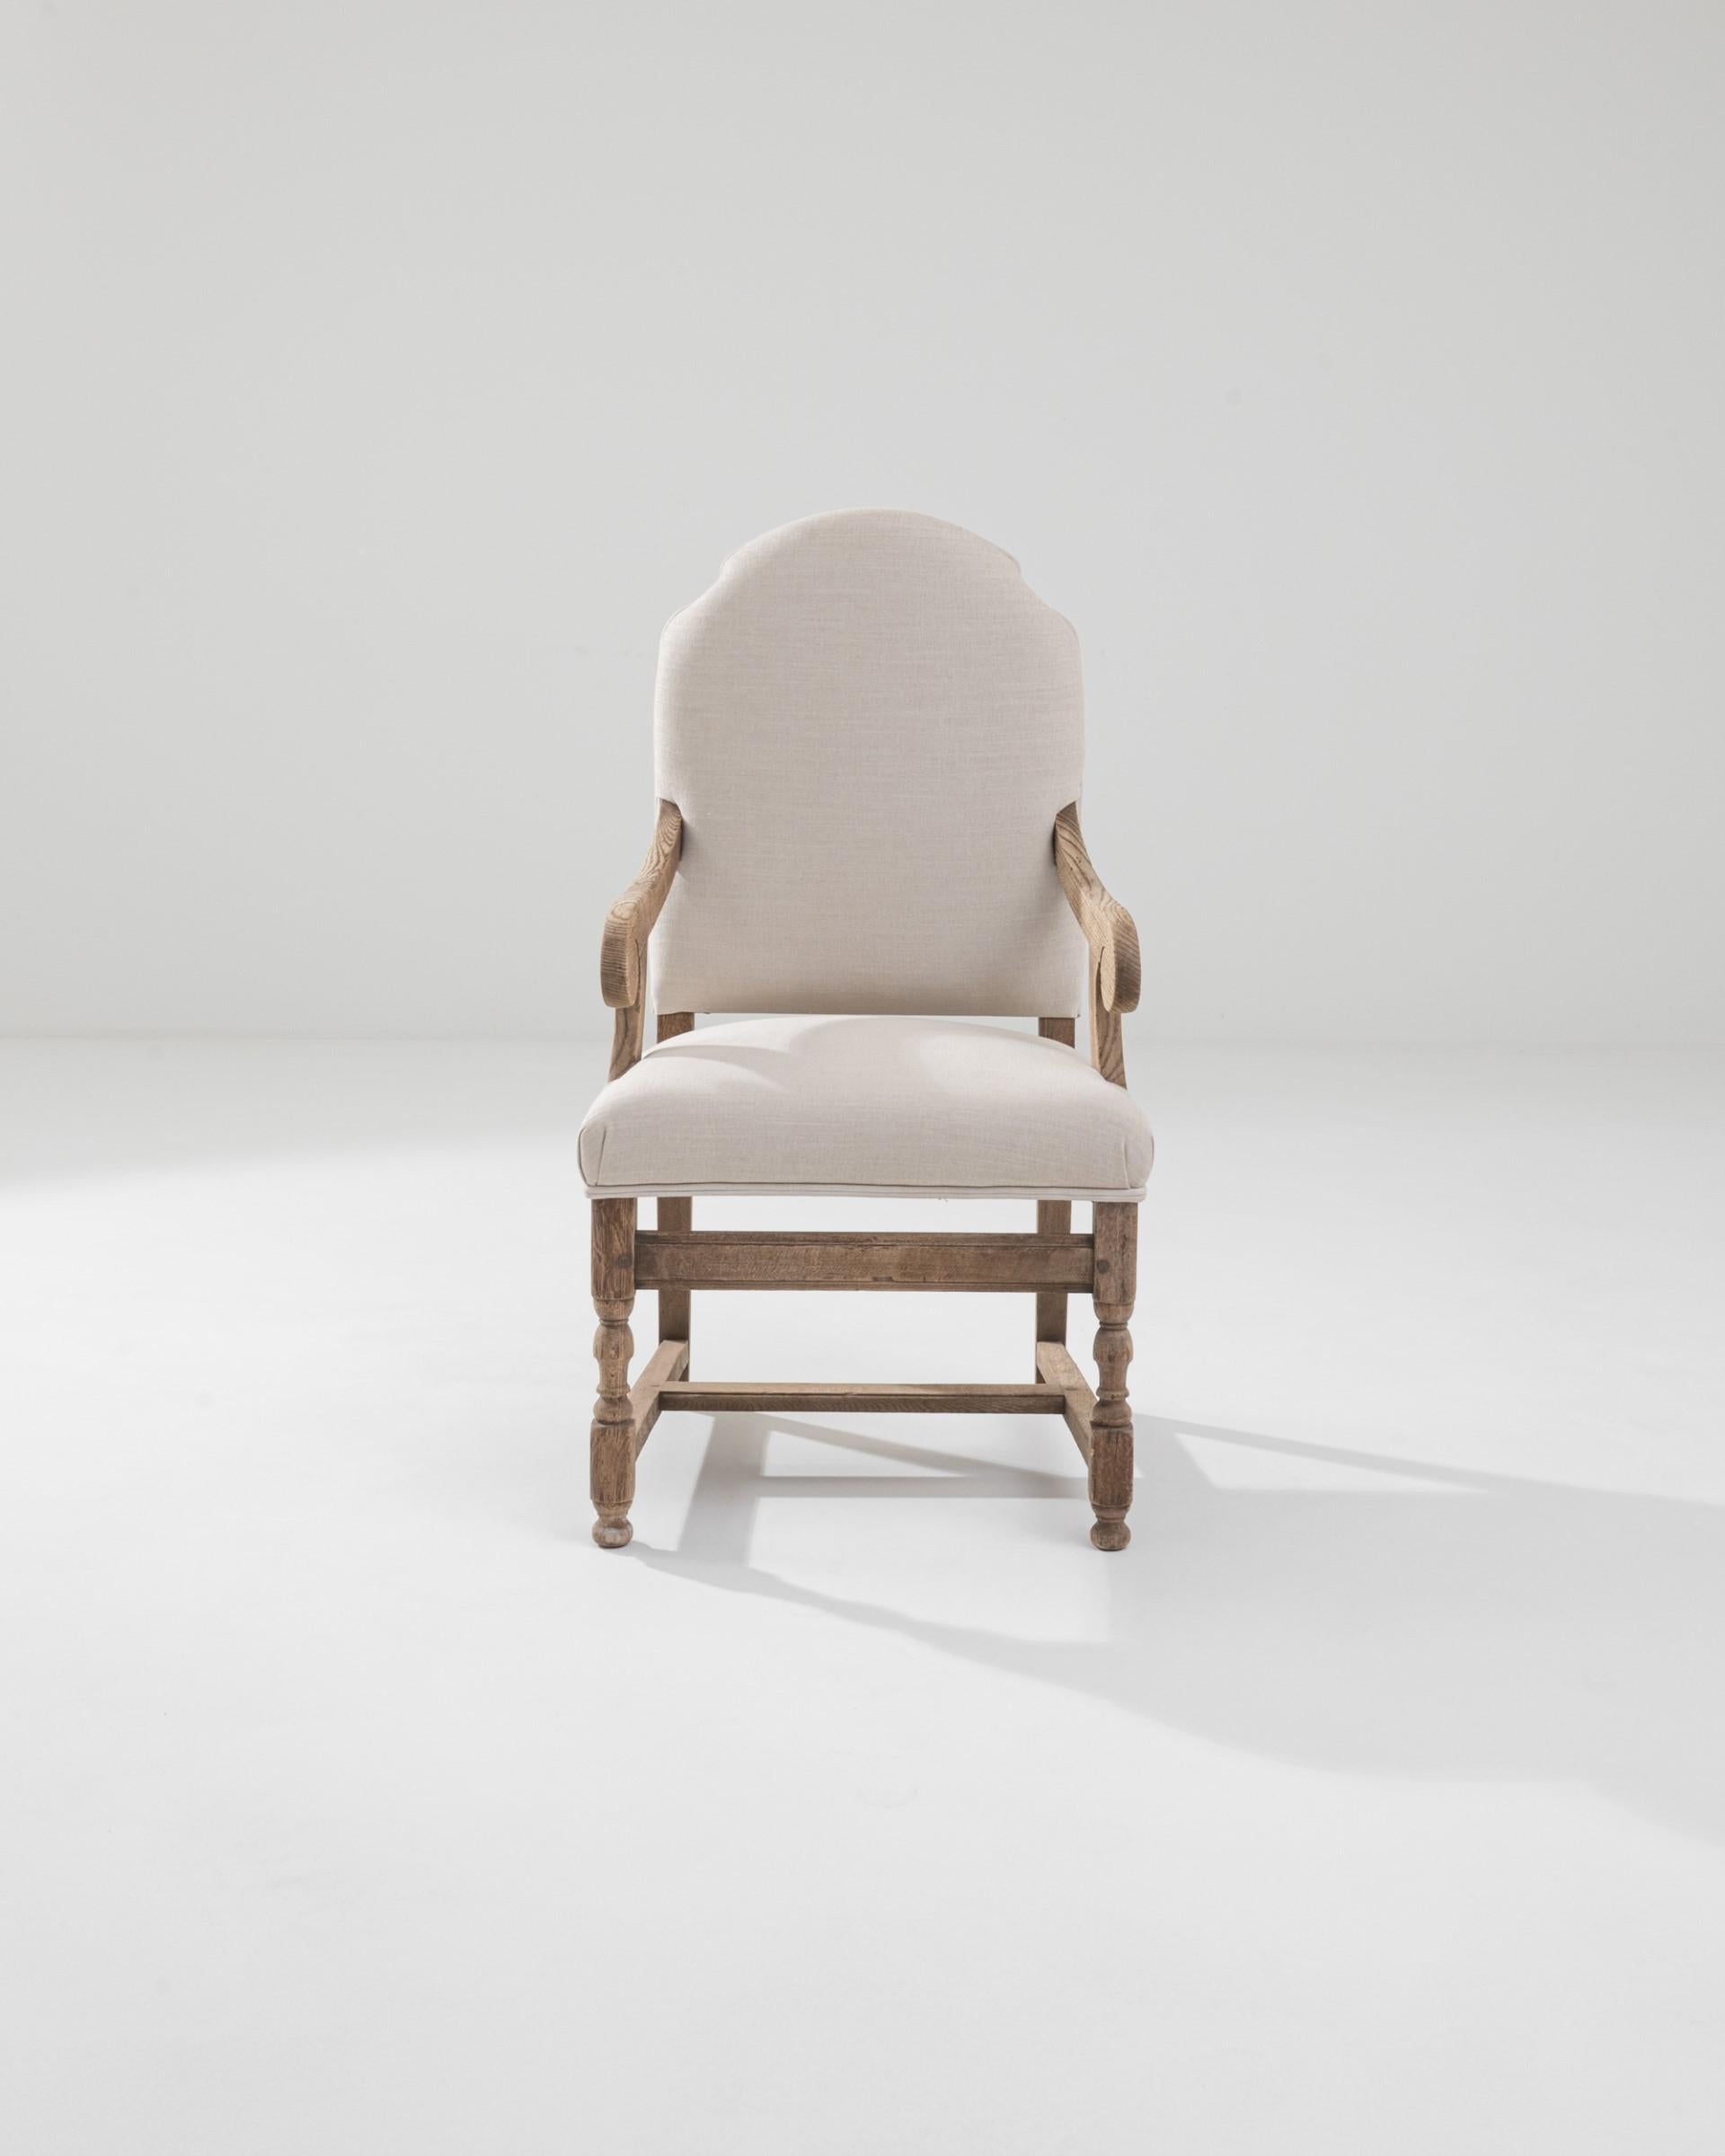 Paire de fauteuils en chêne blanchi du 20e siècle en France, soigneusement retapissés. Fabriqués en chêne massif et blanchis de façon experte pour obtenir une patine douce et lumineuse, ces fauteuils portent la marque de l'artisanat français. Les